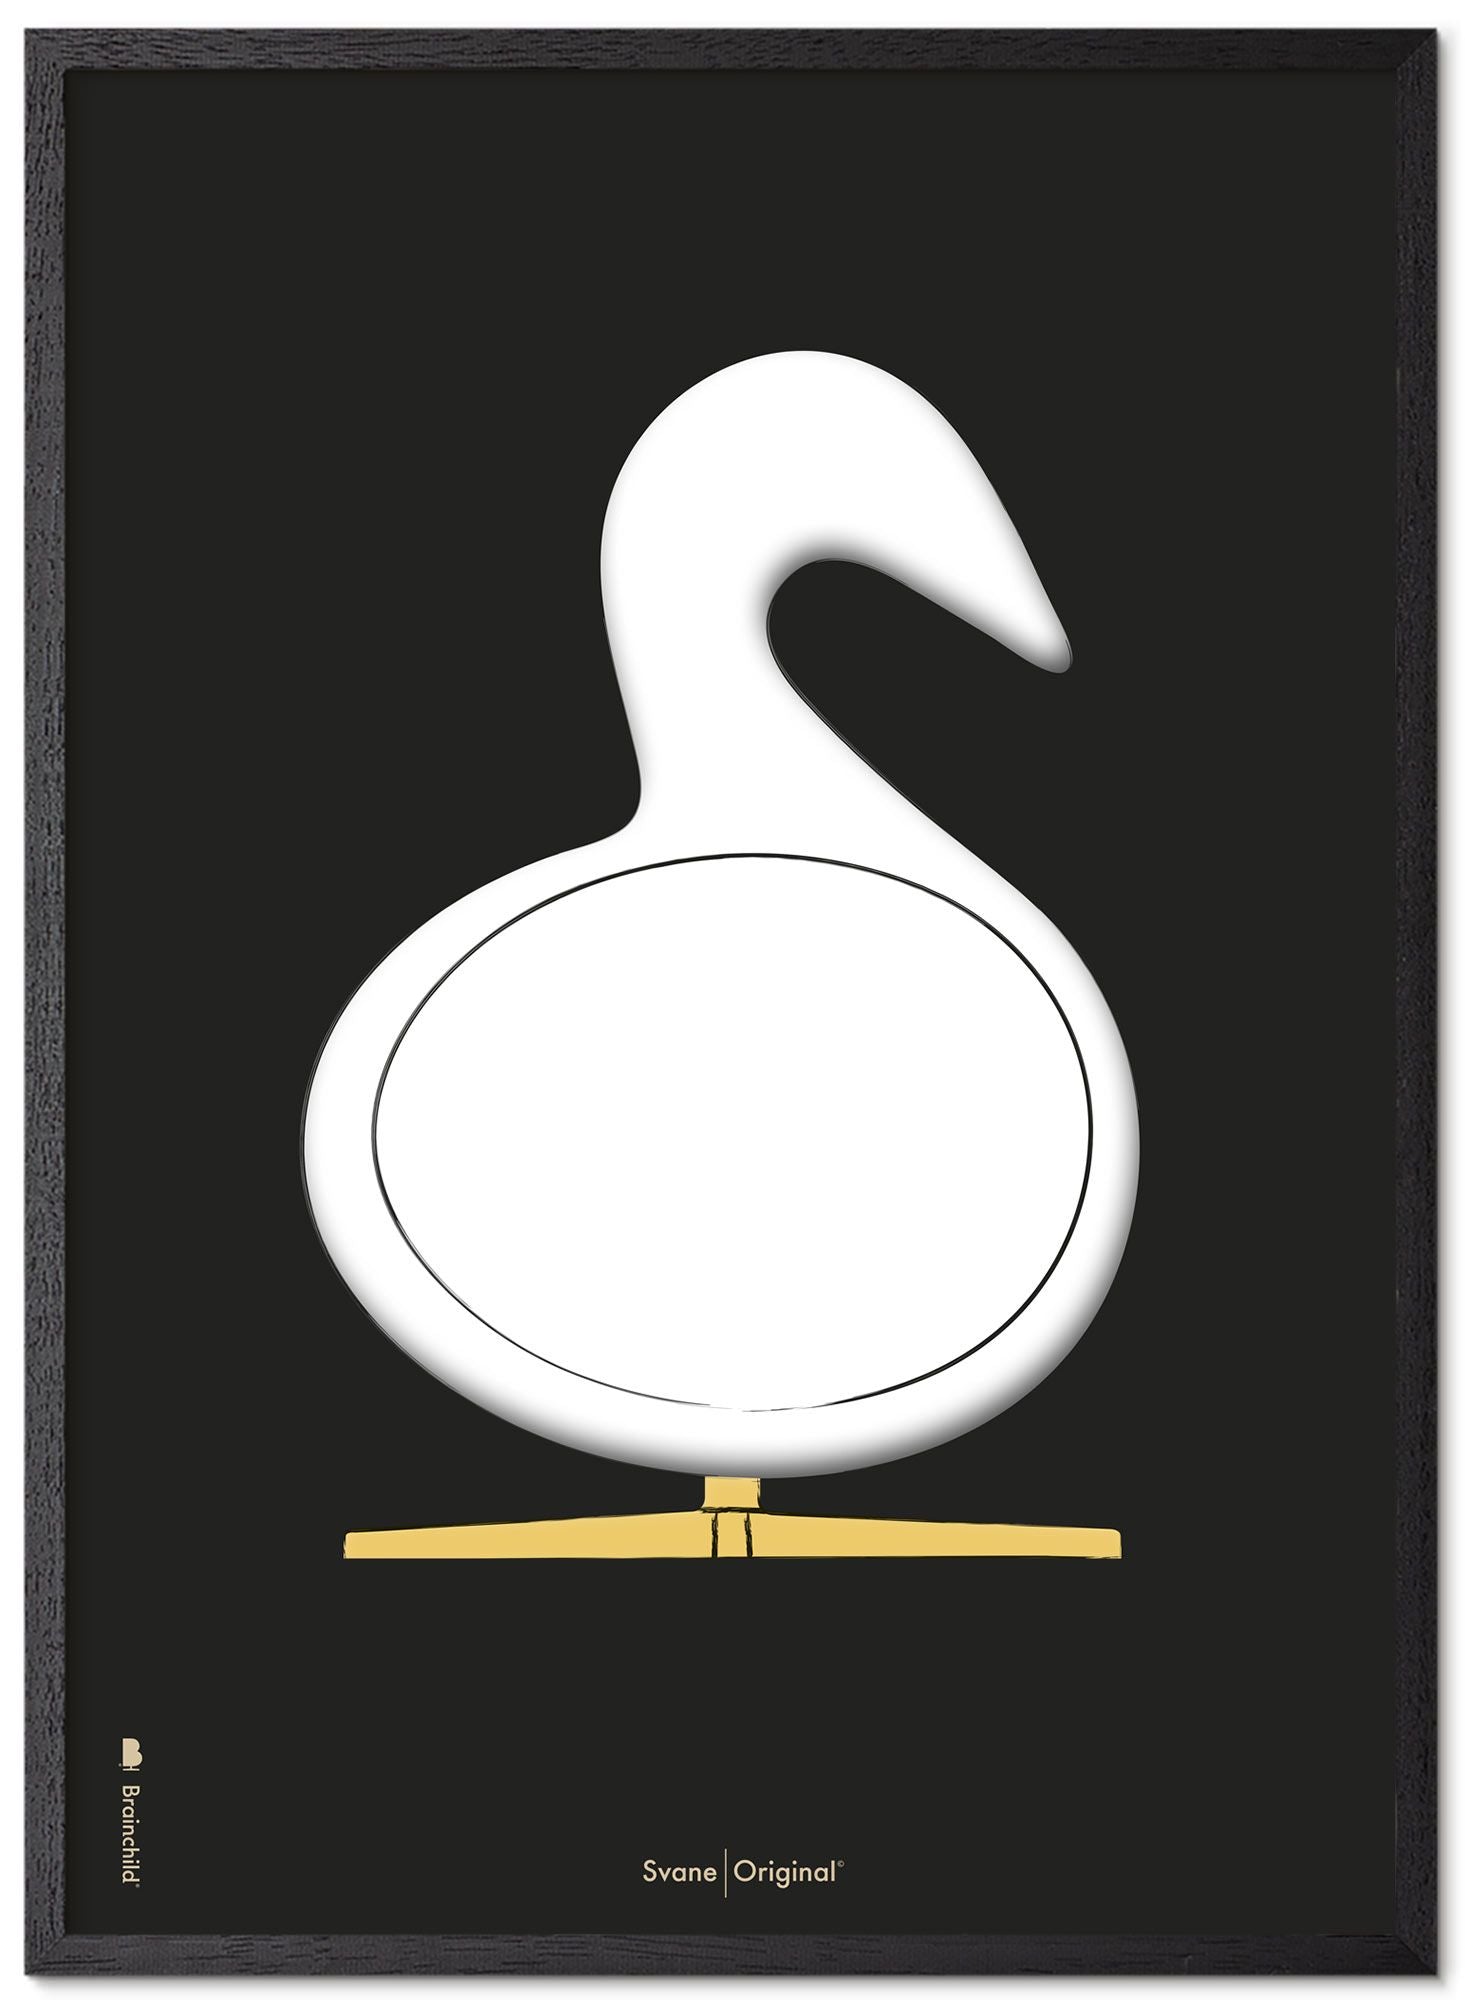 Marco de póster de boceto de diseño de Swan de creación de madera lacada negra A5, fondo negro